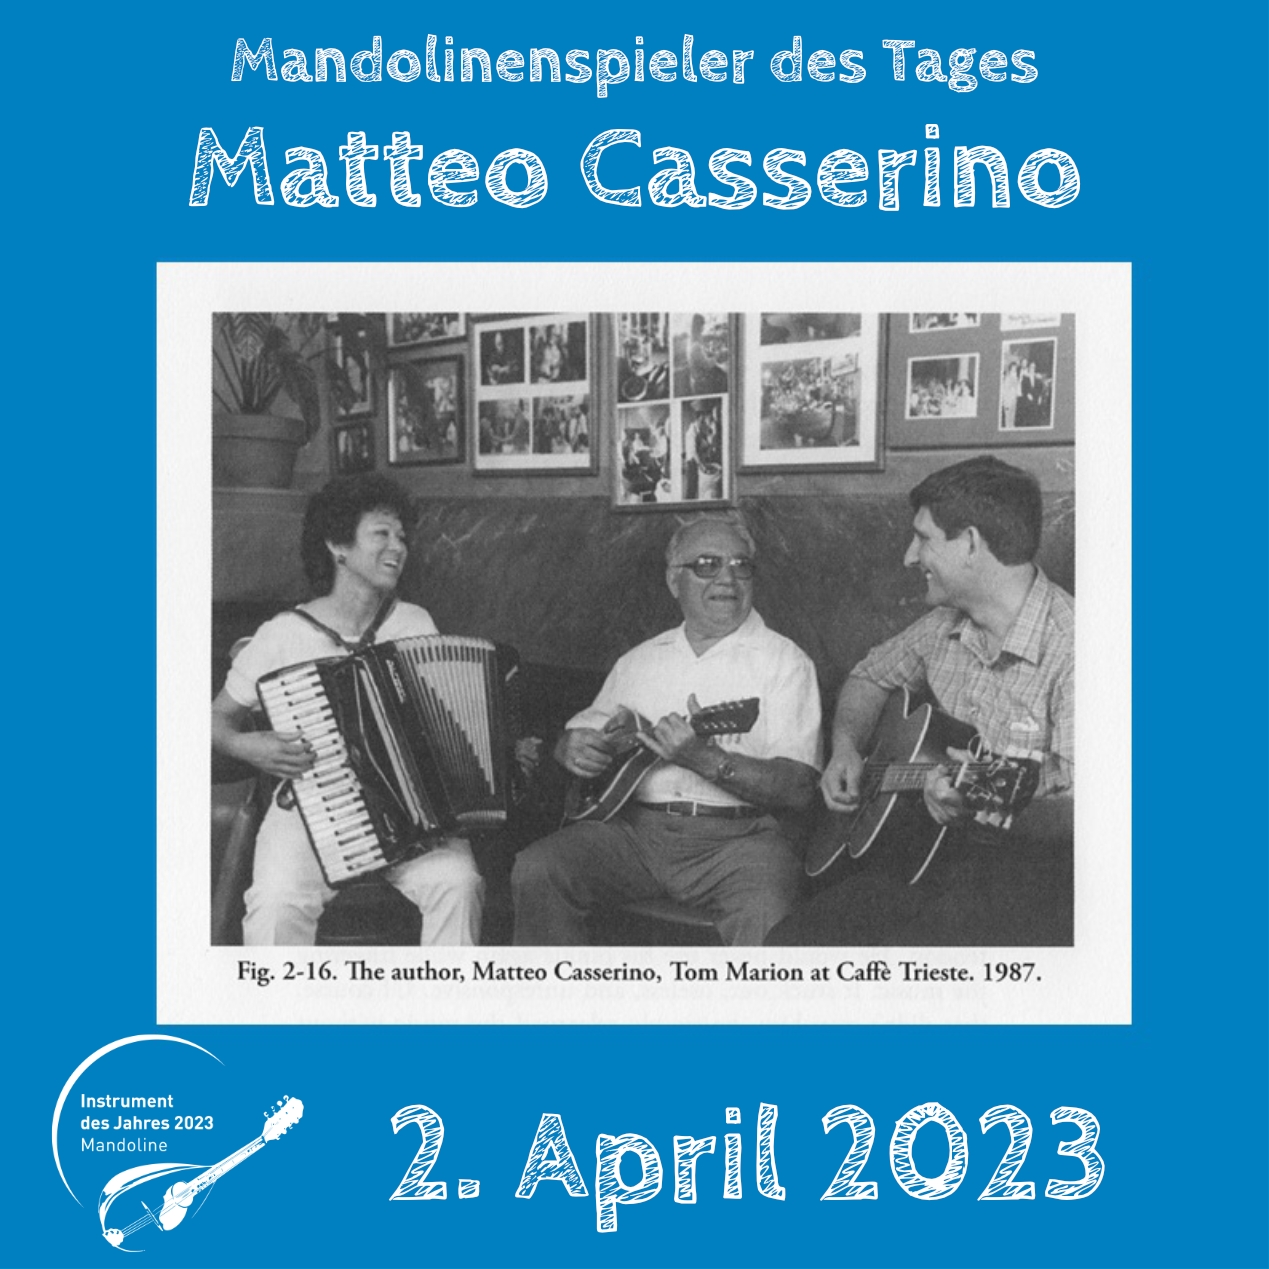 Matteo Casserino Instrument des Jahres 2023 Mandolinenspieler des Tages